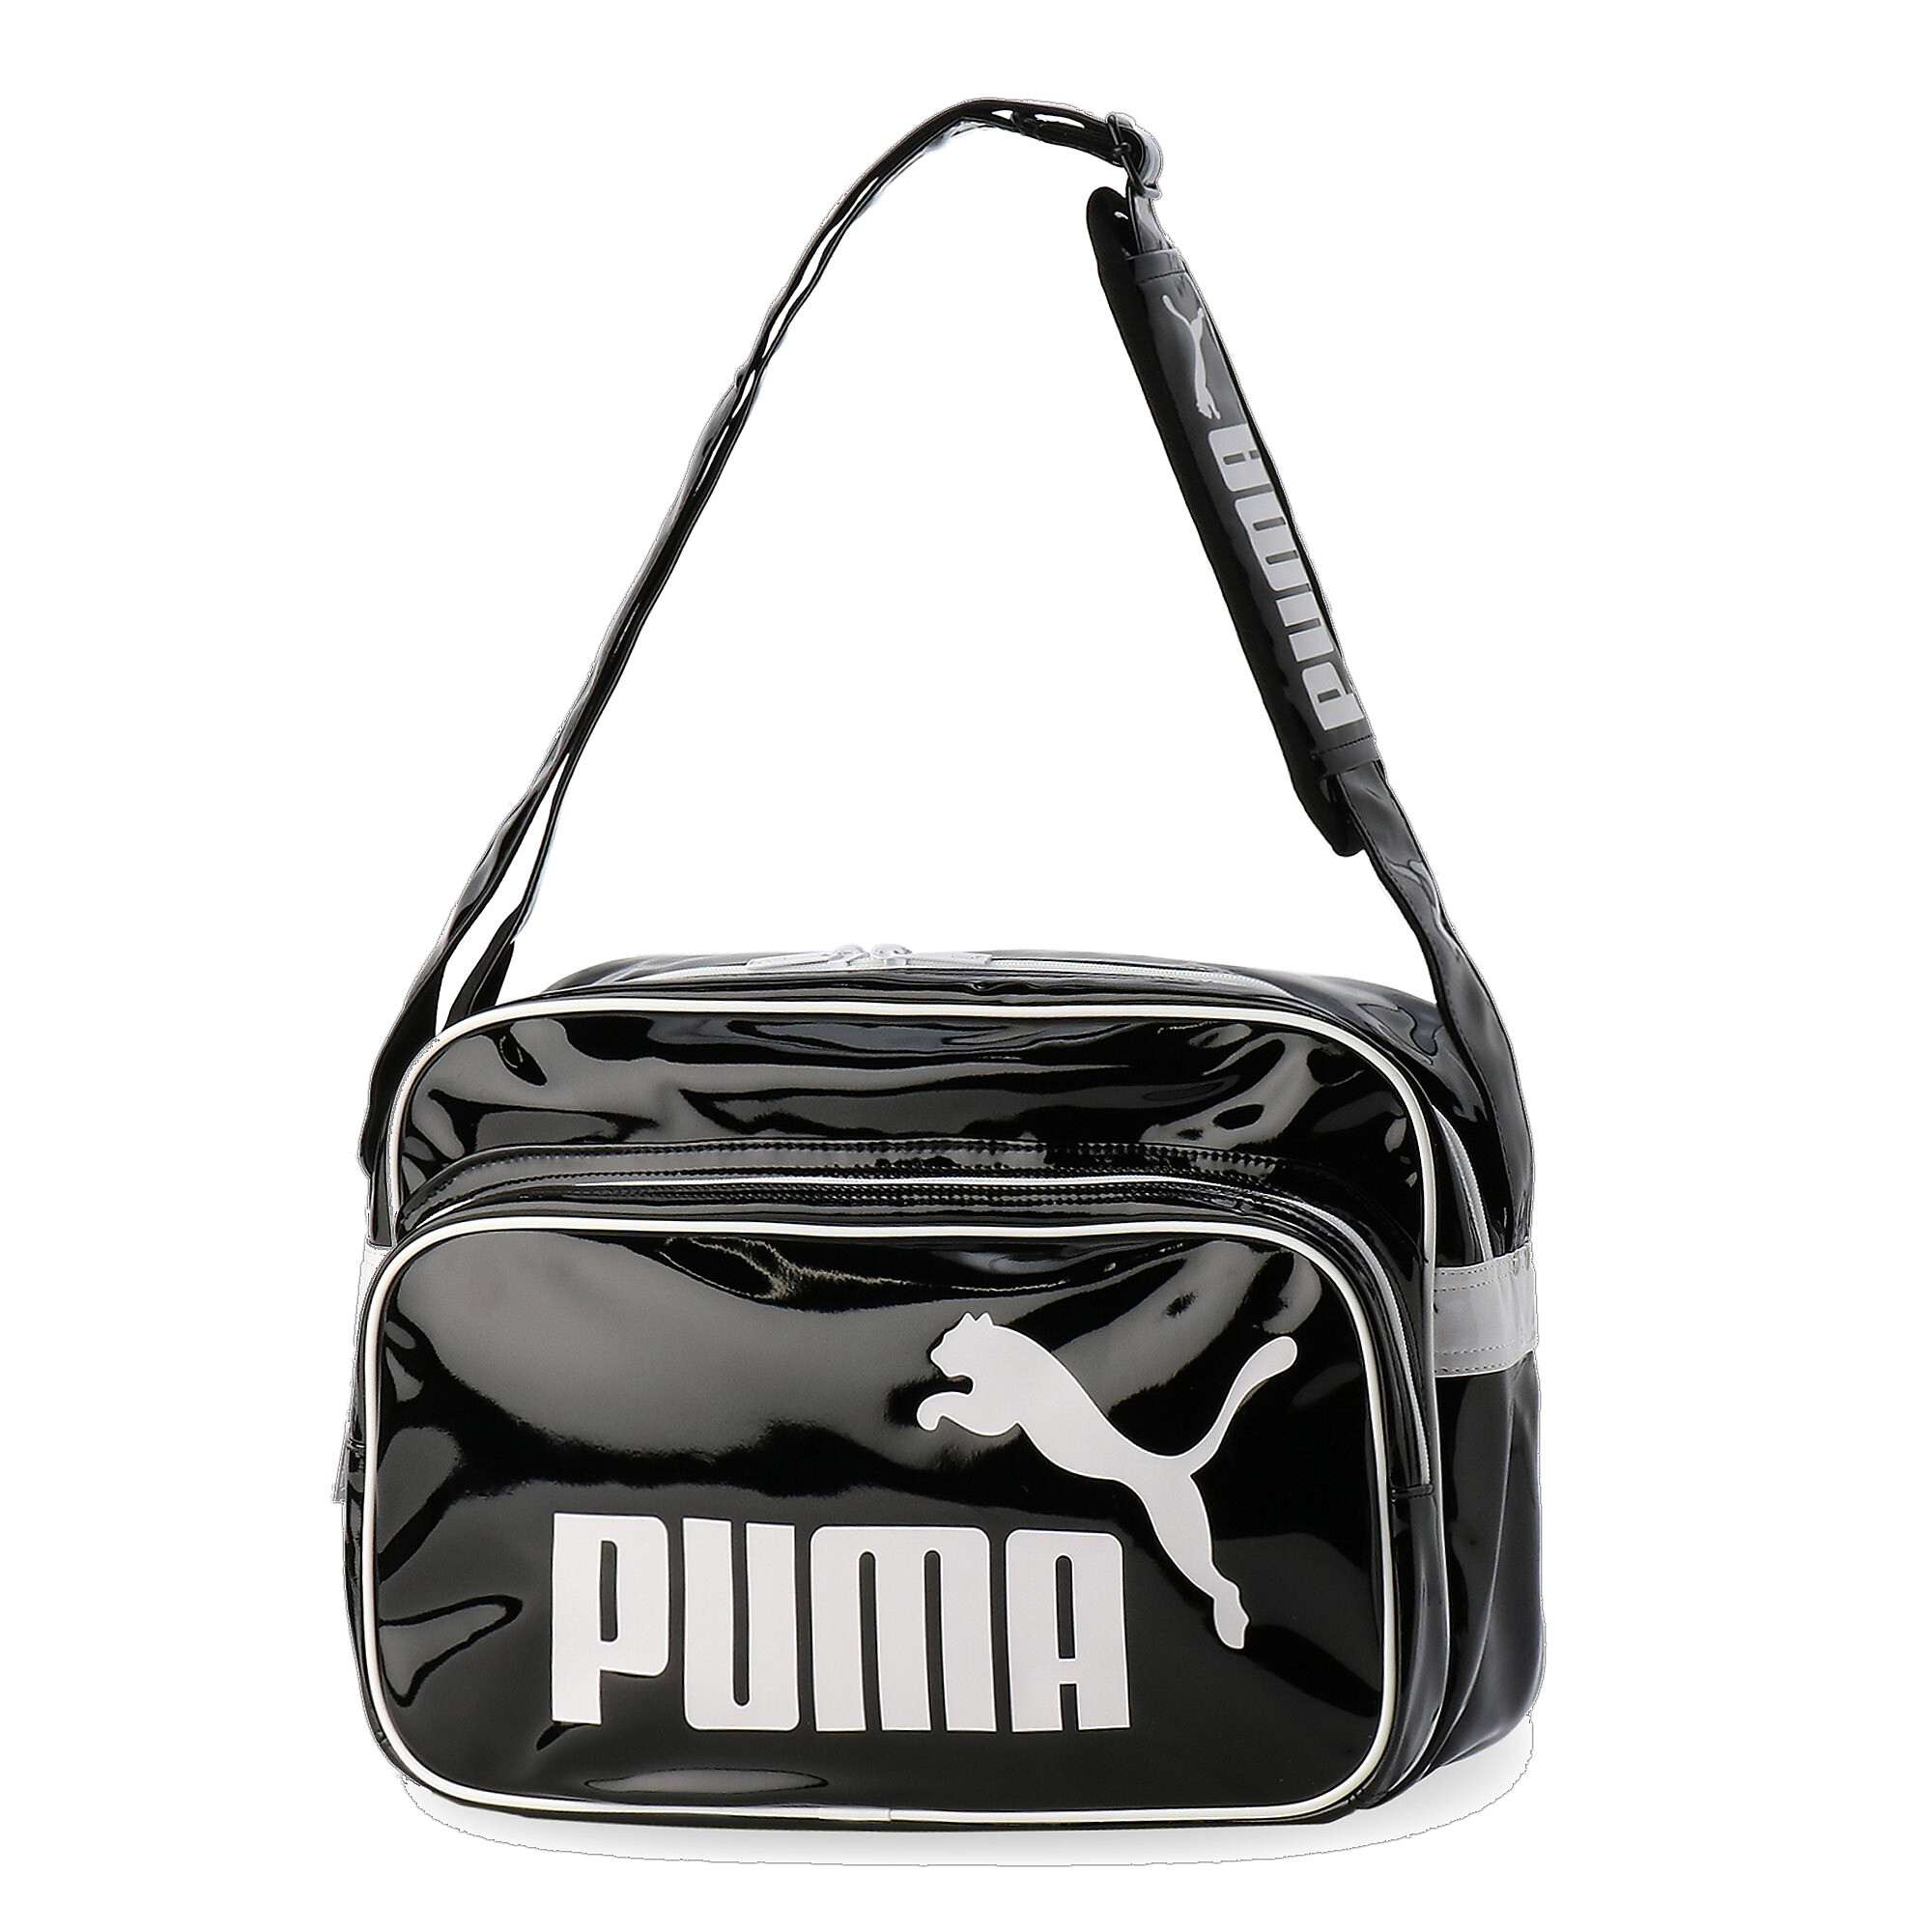 30%OFFIv[}ʔ́ v[} xCg jg jOV[Y Y Puma Black-Puma White-Puma Silver bPUMA.com 16